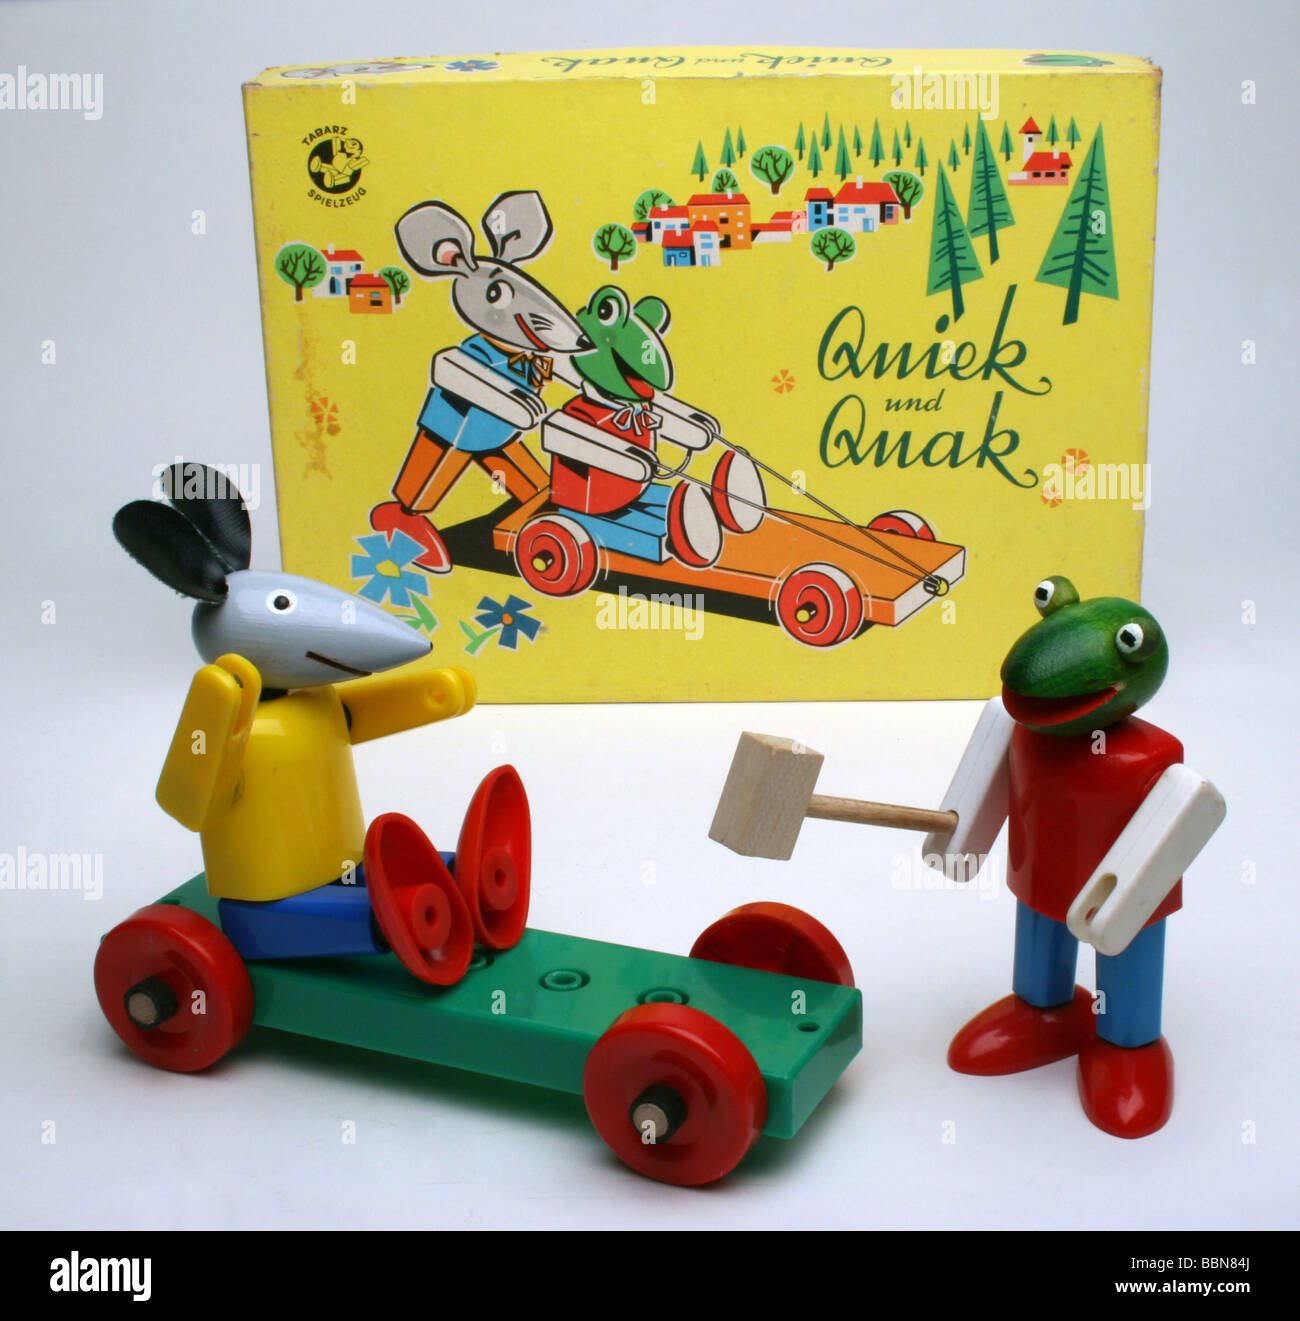 Spielzeug, Miniaturfiguren, Kellner Stapelfiguren "Quiek und Quak",  hergestellt vom Kombinat Plastspielwaren Tabarz, DDR, 1970er Jahre  Stockfotografie - Alamy